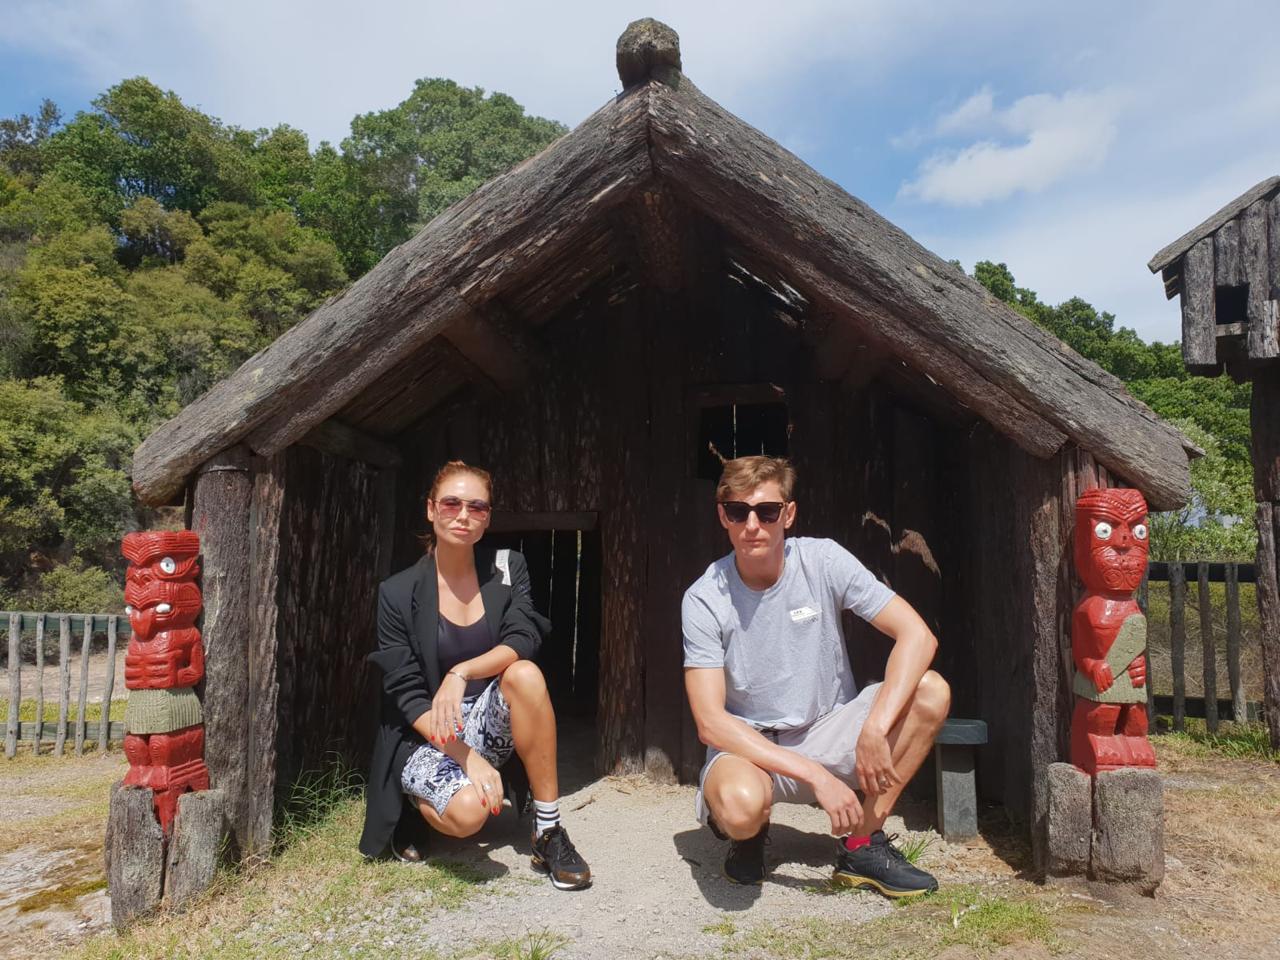 Дневник путешественников Ляйсан Утяшева и Павел Воля о незабываемом путешествии в Новую Зеландию